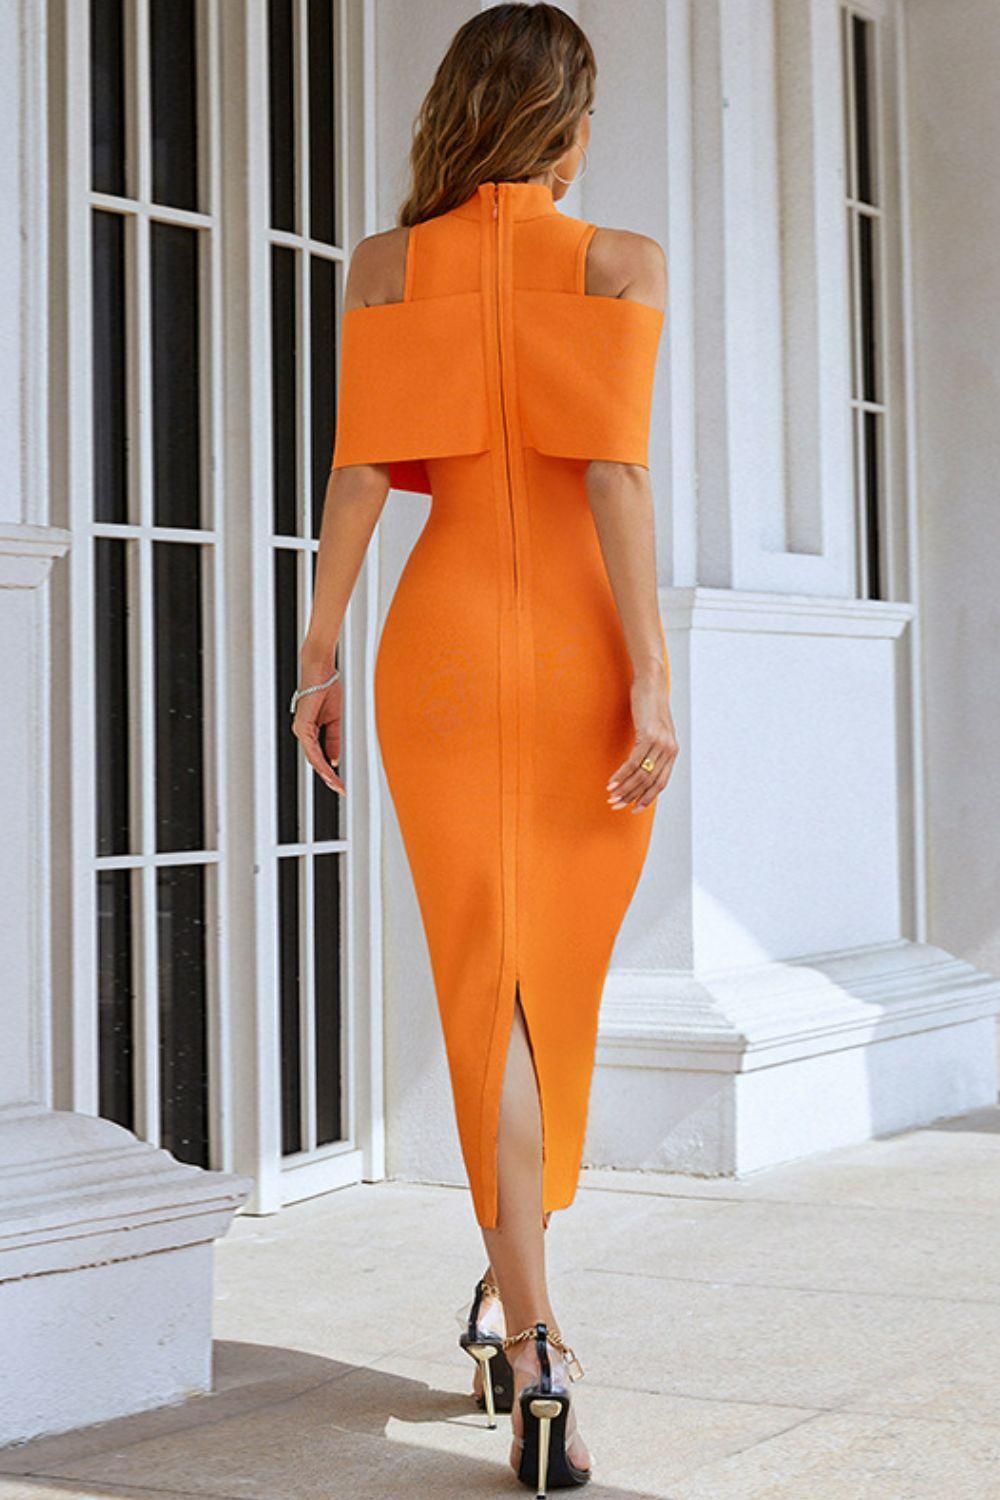 Fascinating Orange Cold-Shoulder Dress - MXSTUDIO.COM